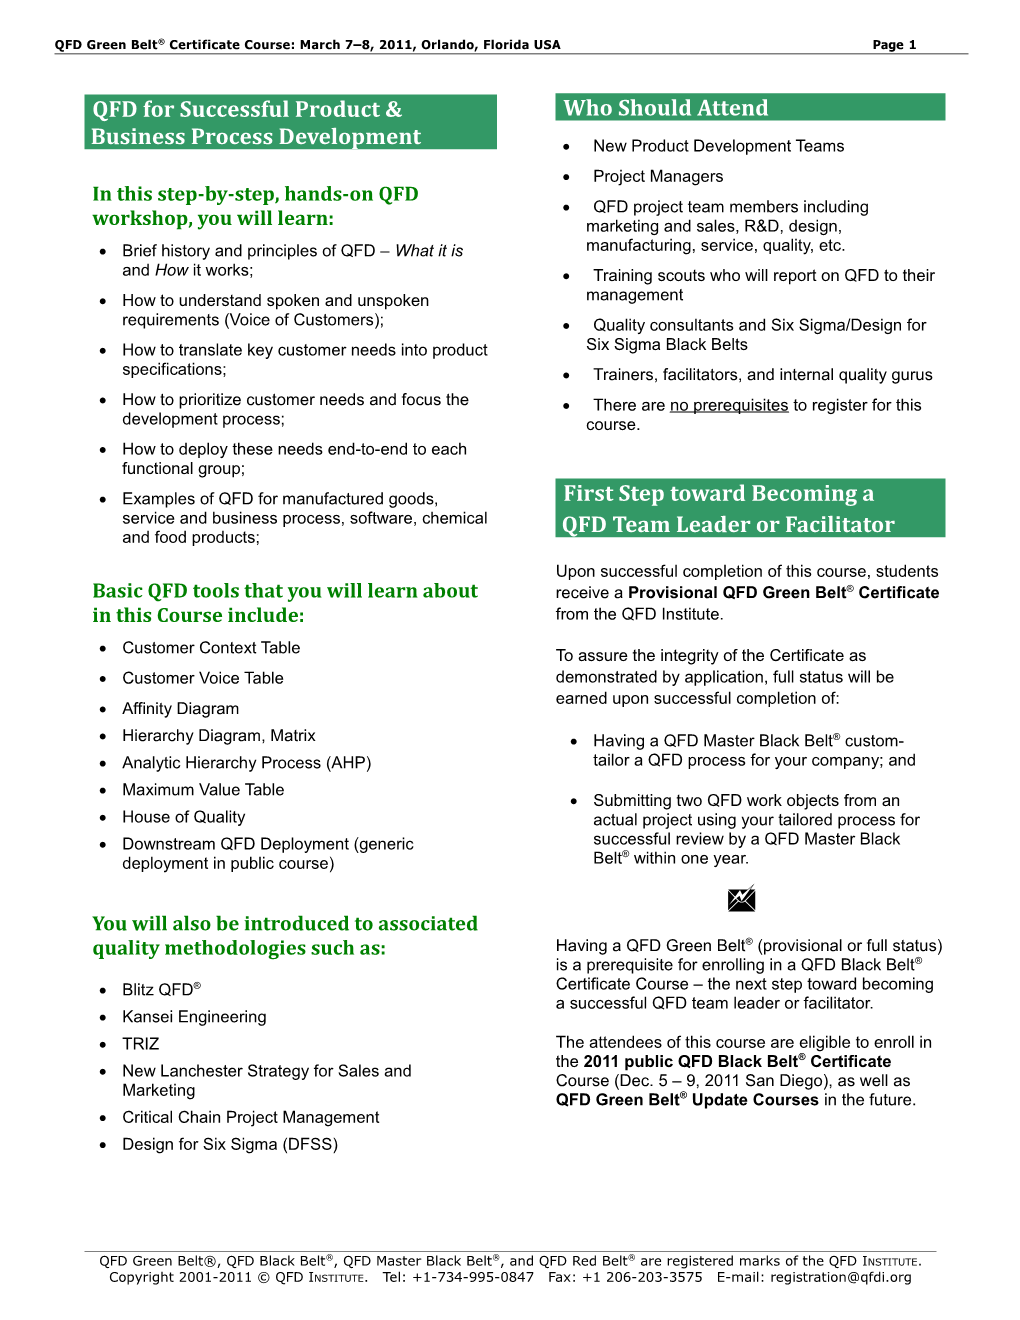 QFD Green Belt(R) Certificate Course Brochure